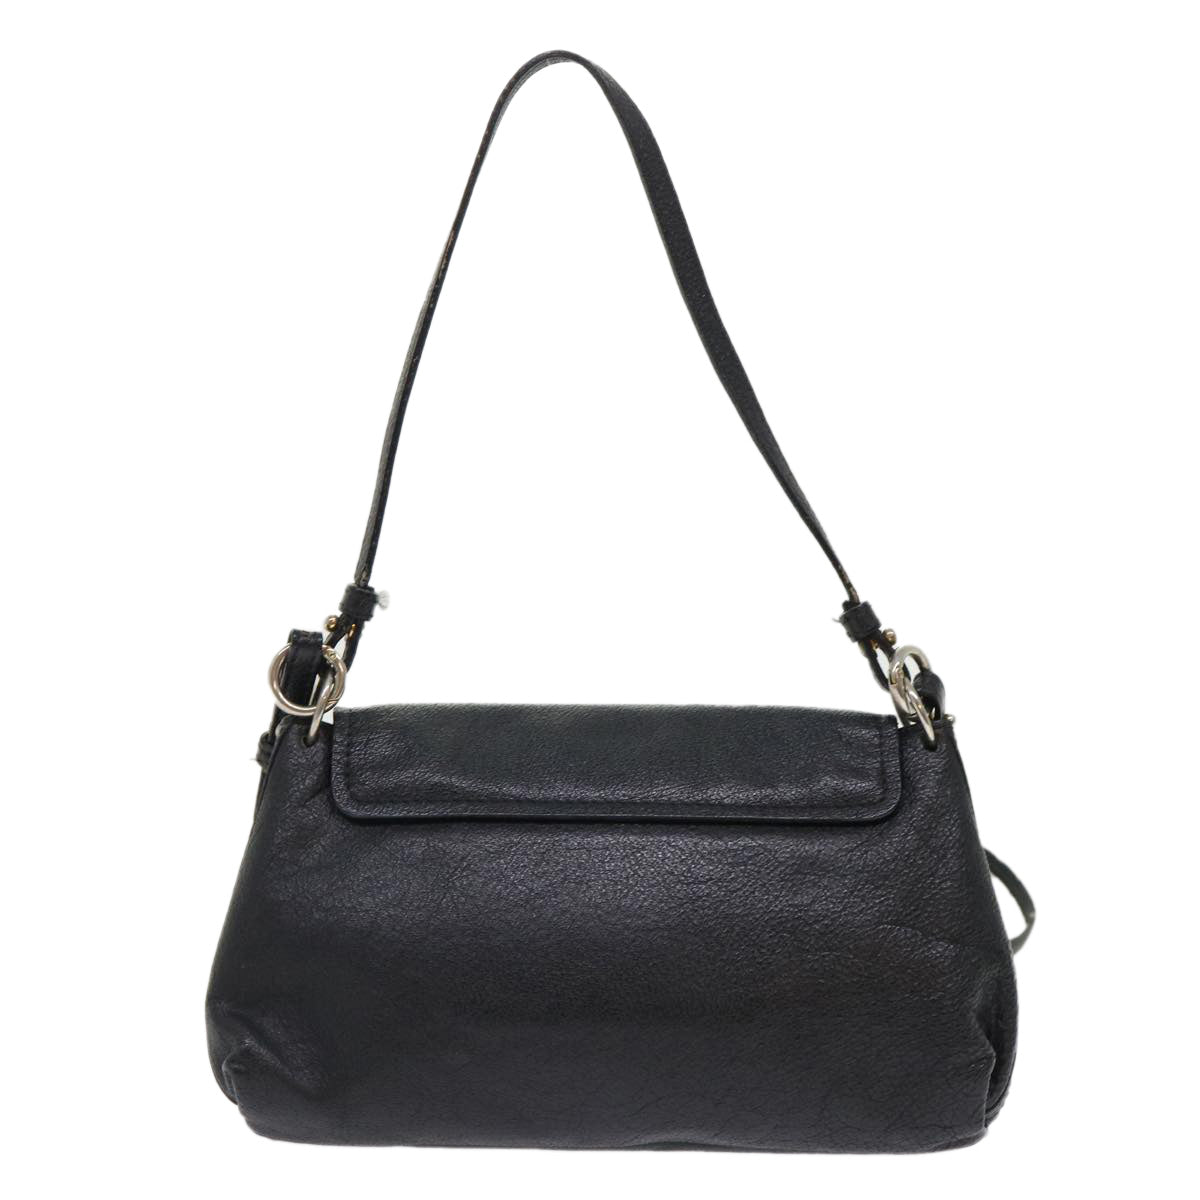 Chloe Shoulder Bag Leather Black Auth bs7243 - 0